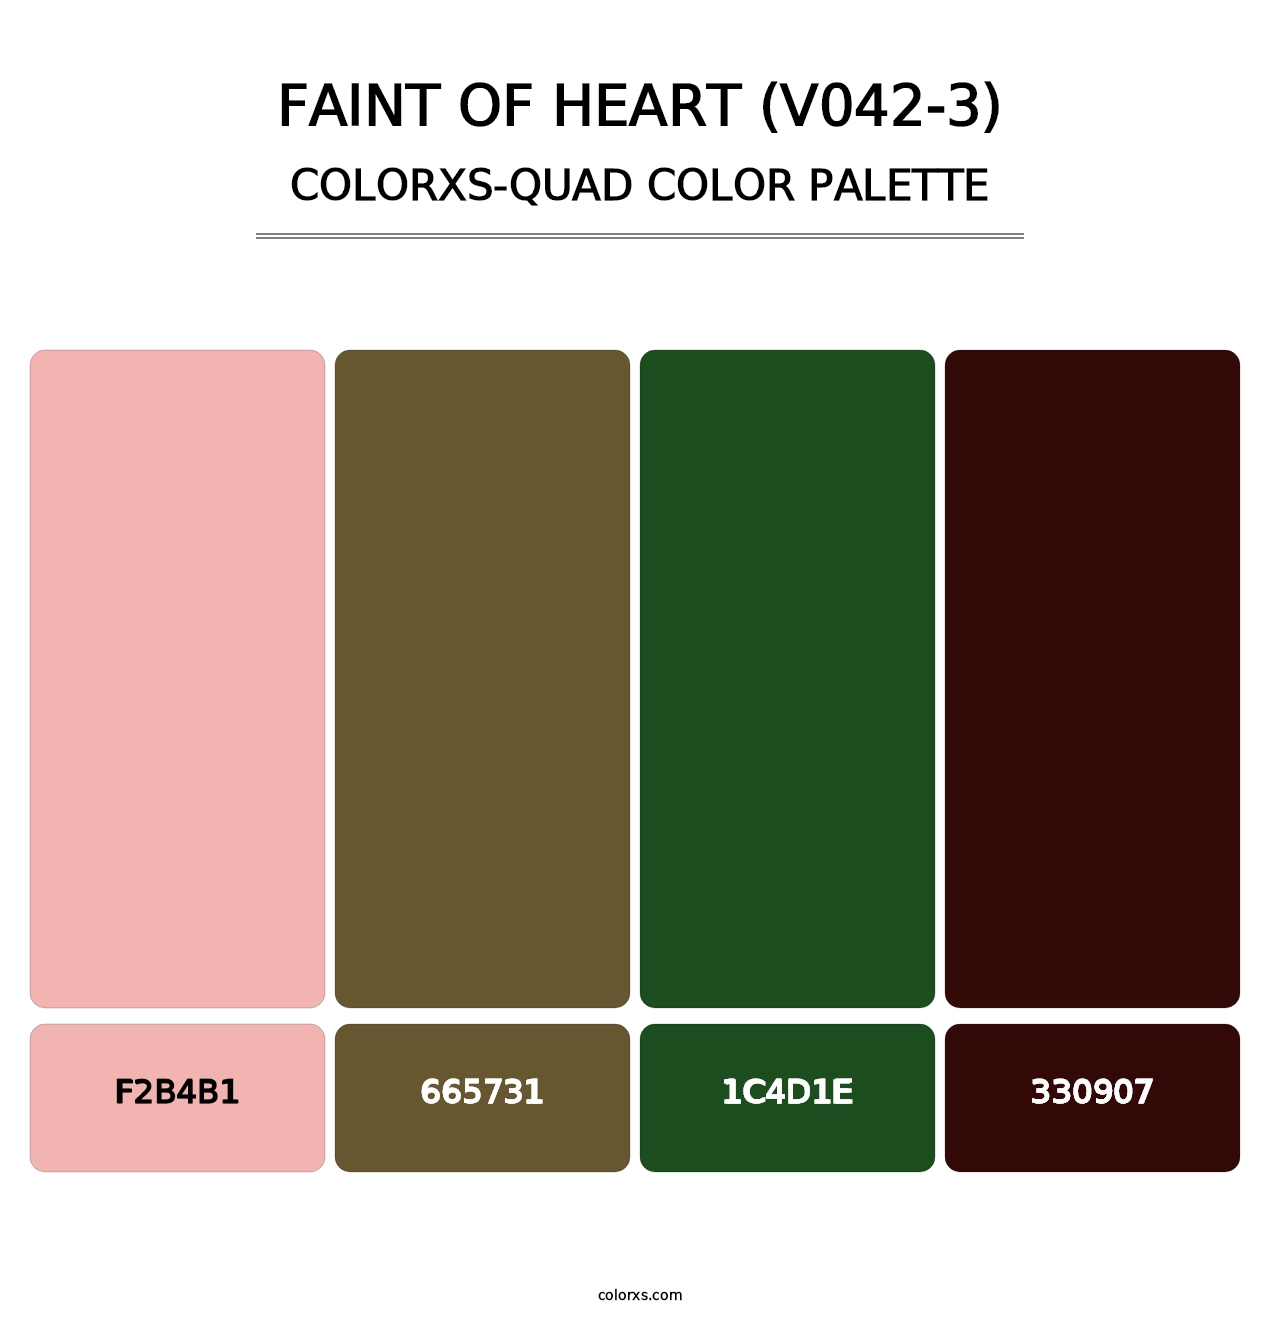 Faint of Heart (V042-3) - Colorxs Quad Palette